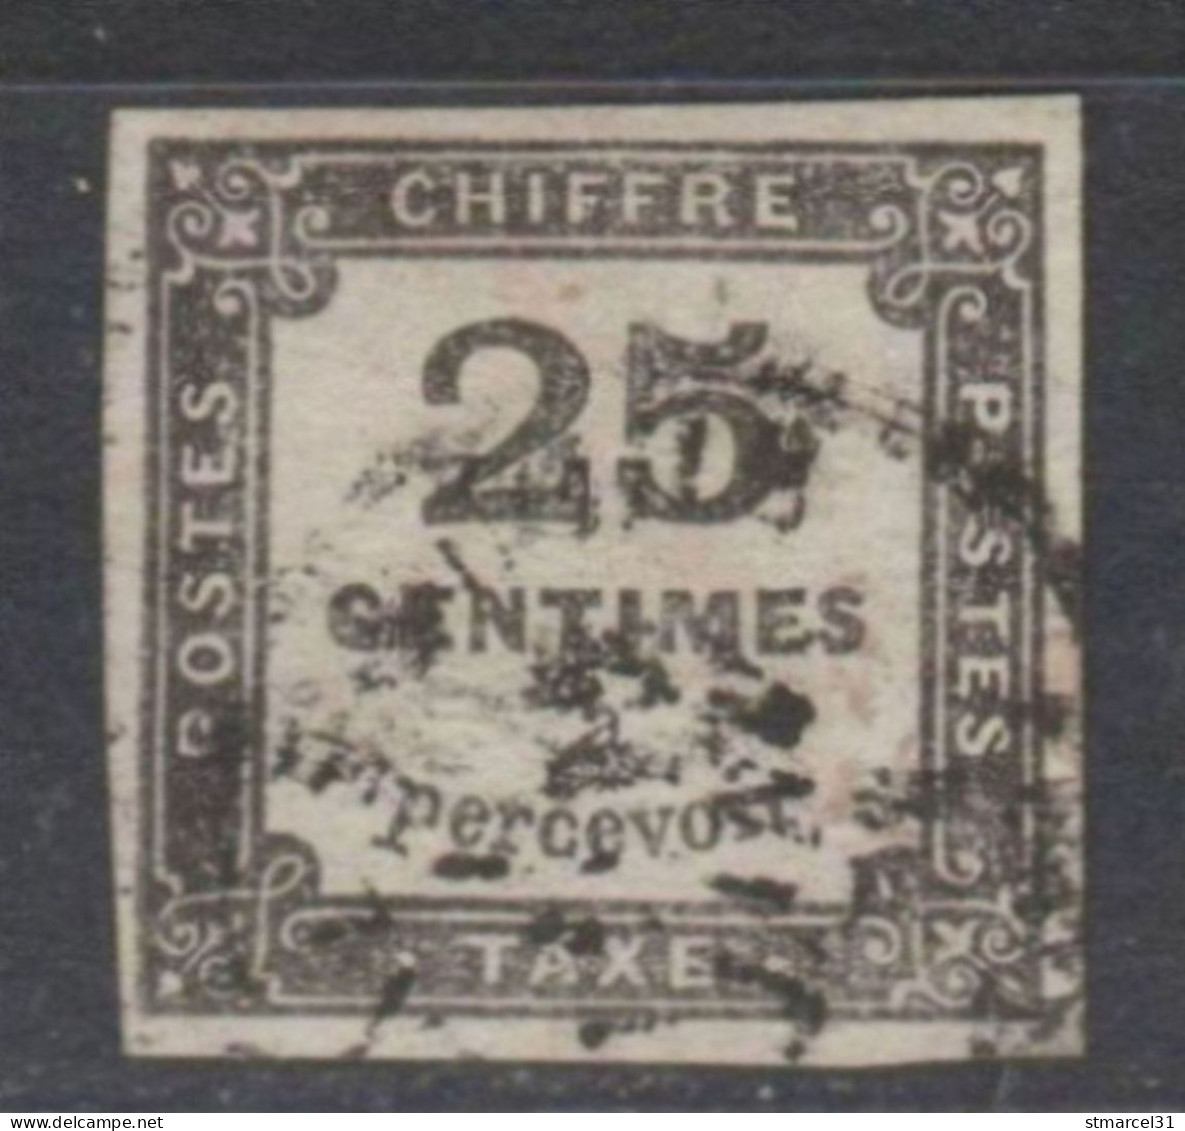 RARETE NUANCE GRIS NOIR Du N°5 TBE/Luxe Signé - 1859-1959 Used